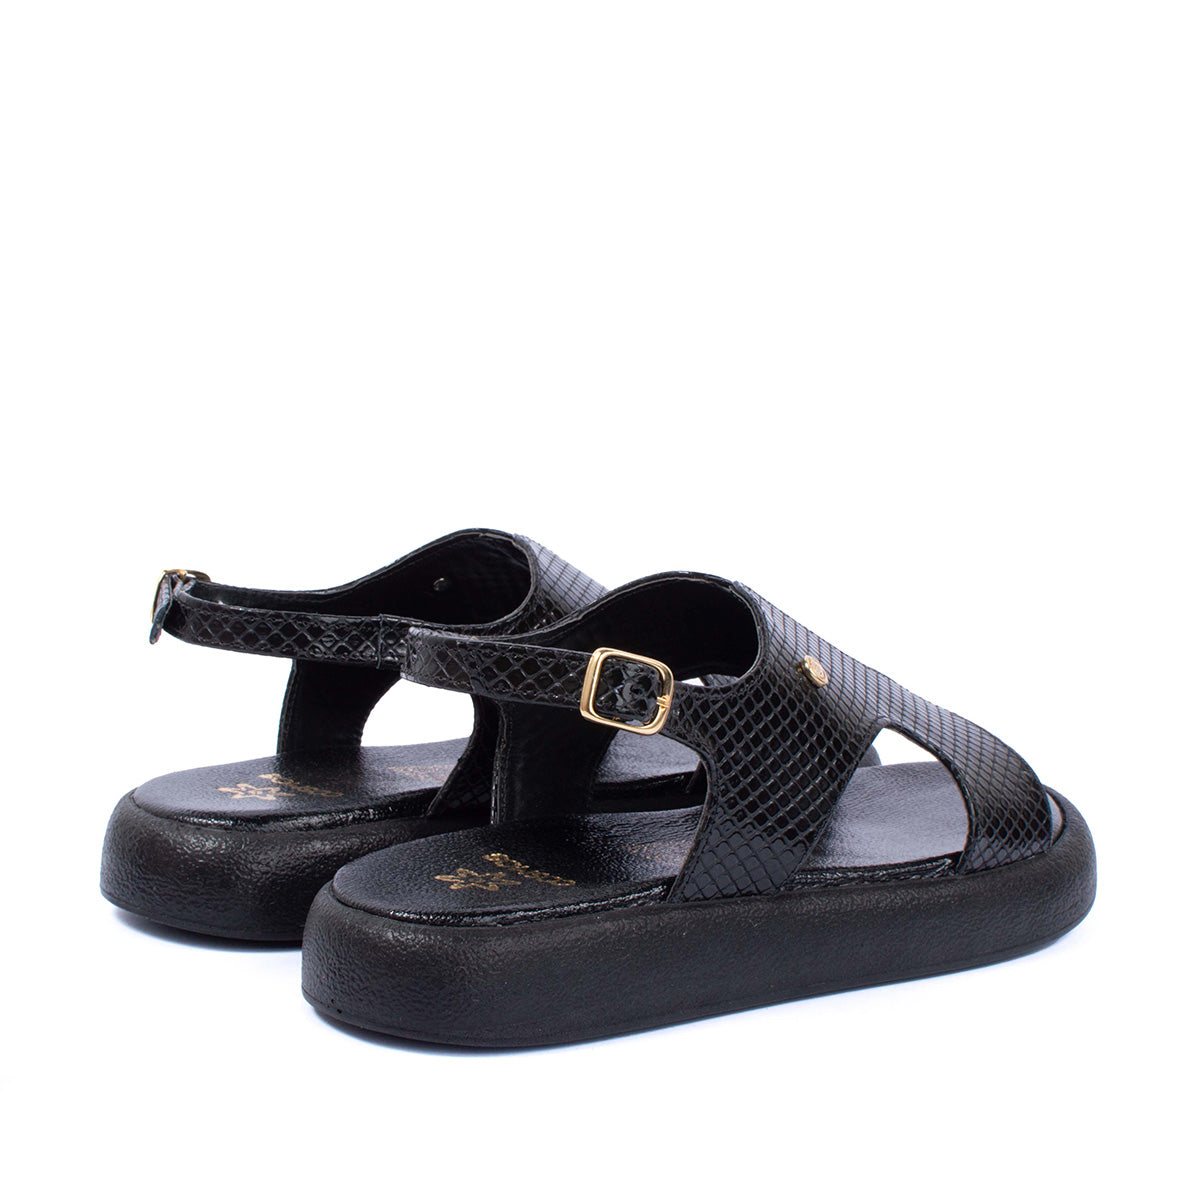 Sandalias planas en cuero color negro con textura tipo croco 104074